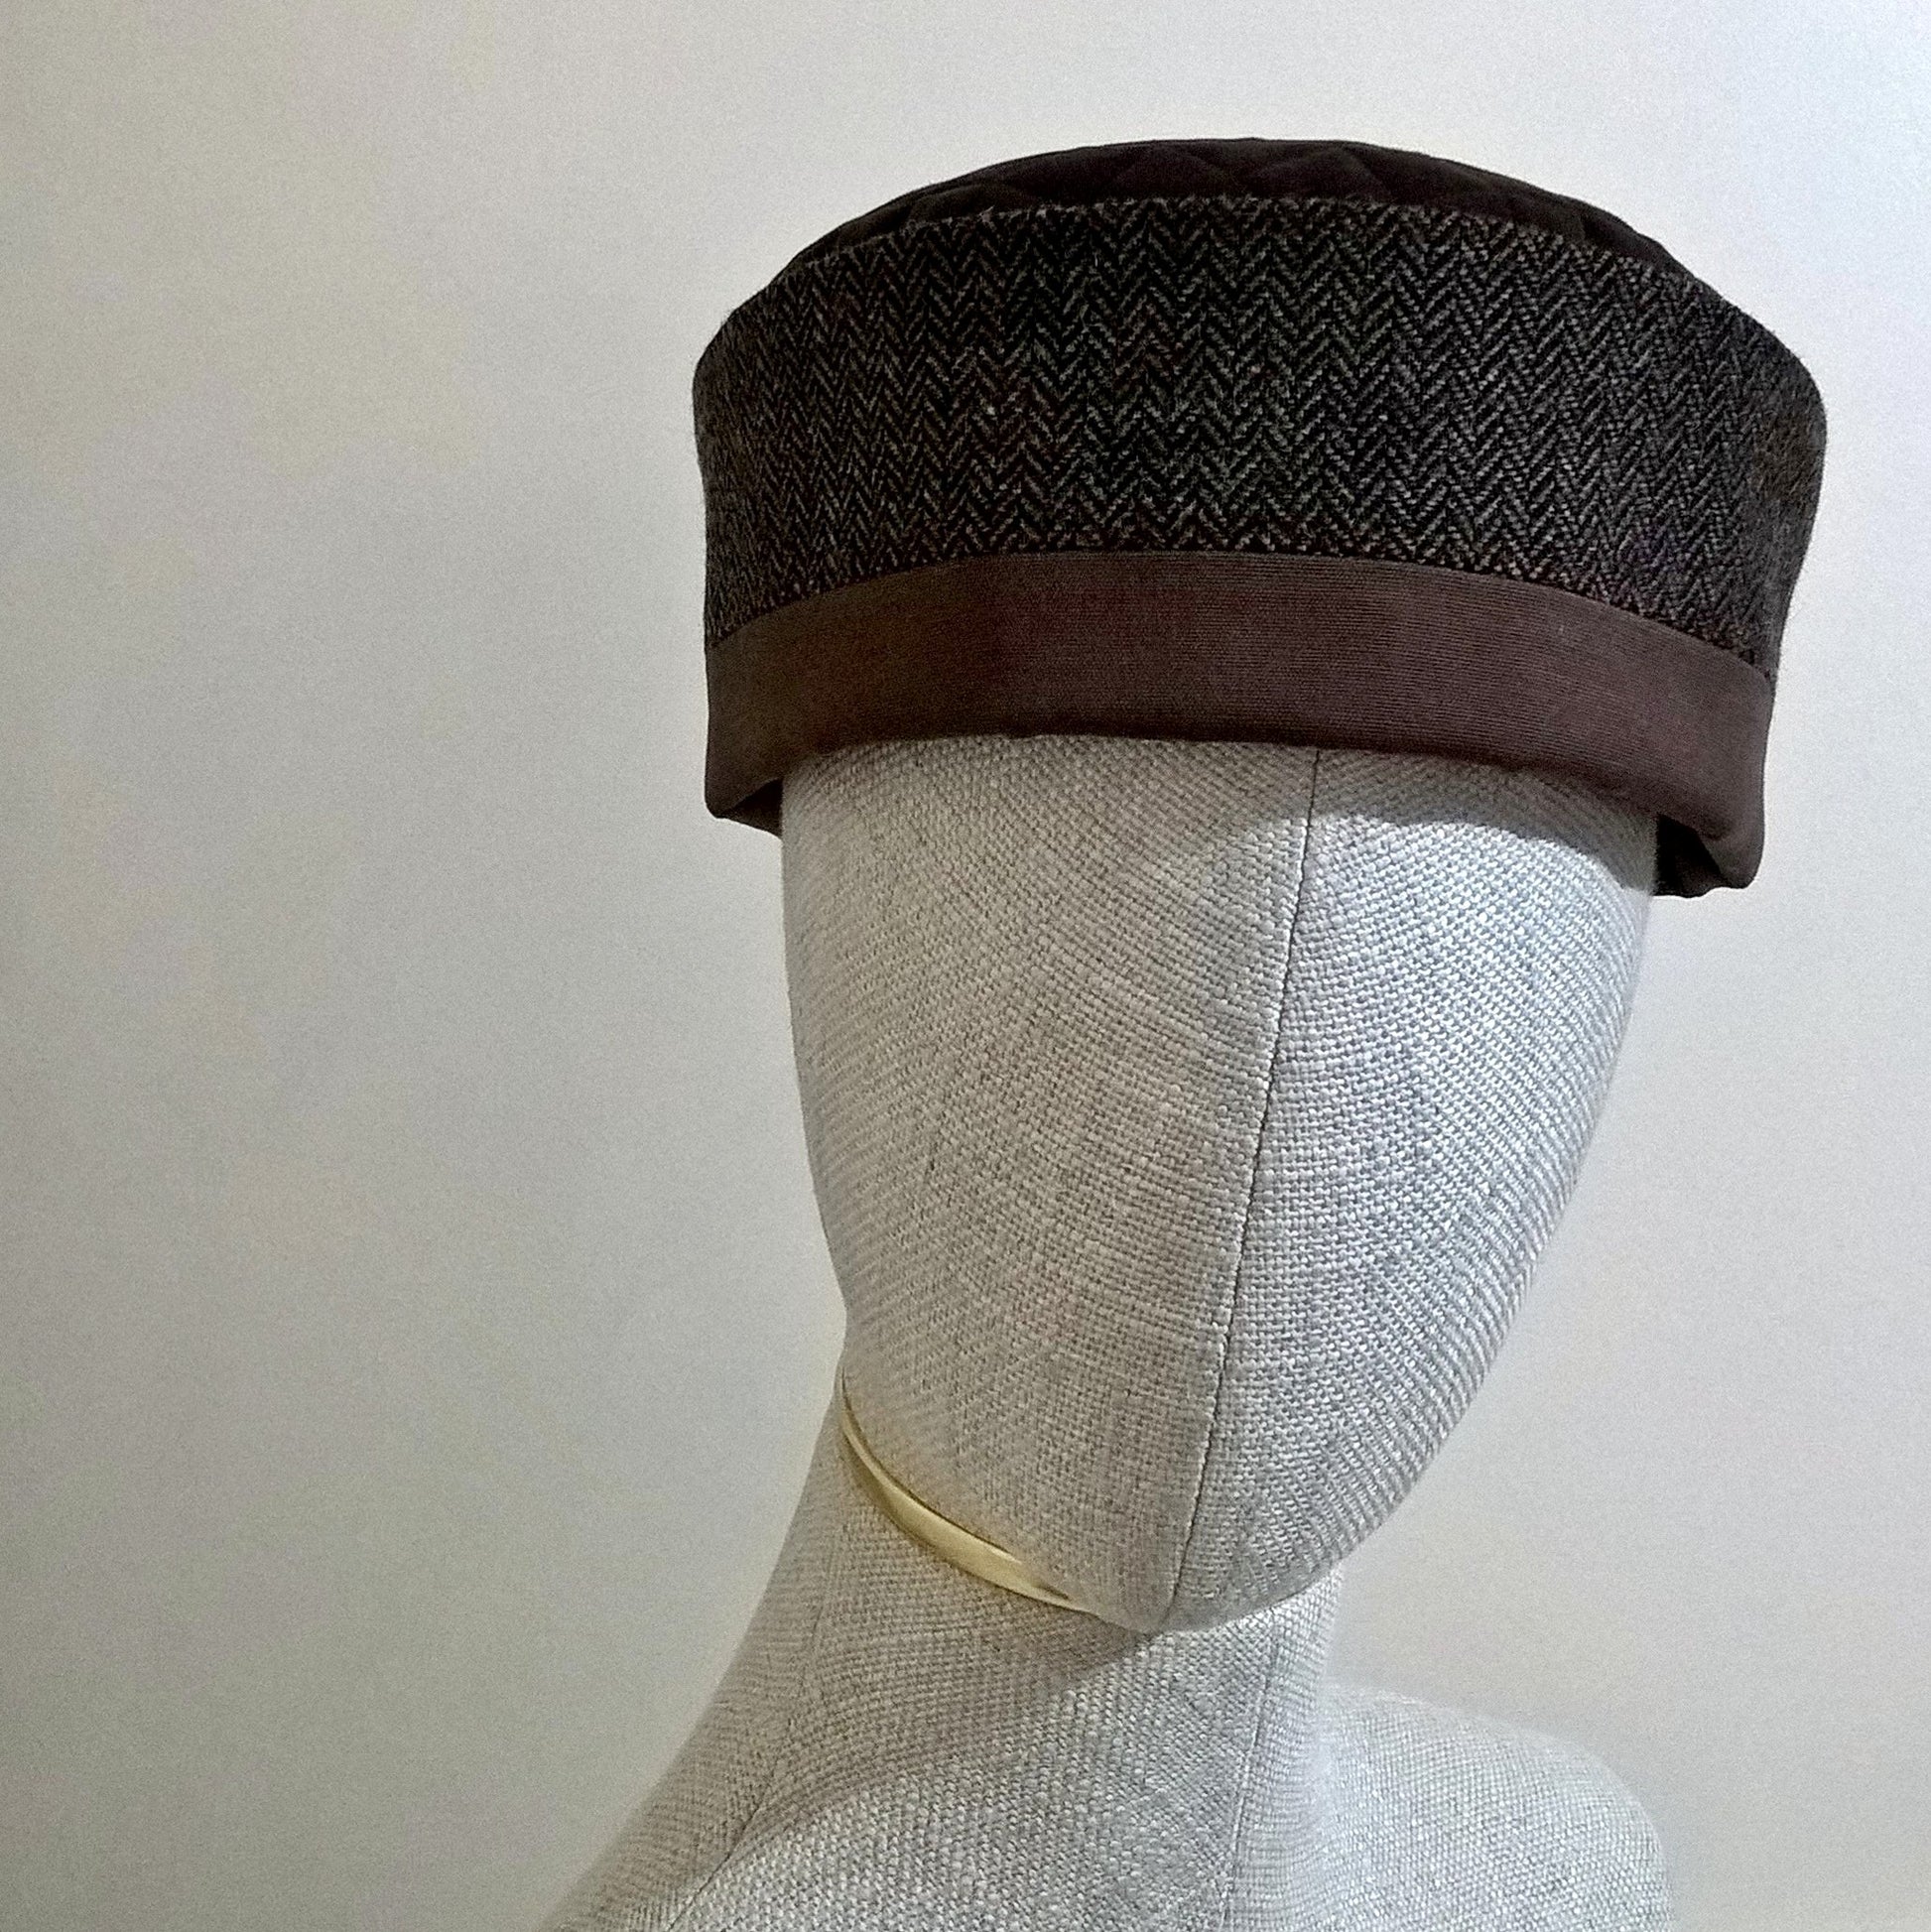 Wool smoking cap handmade in brown tweed herringbone